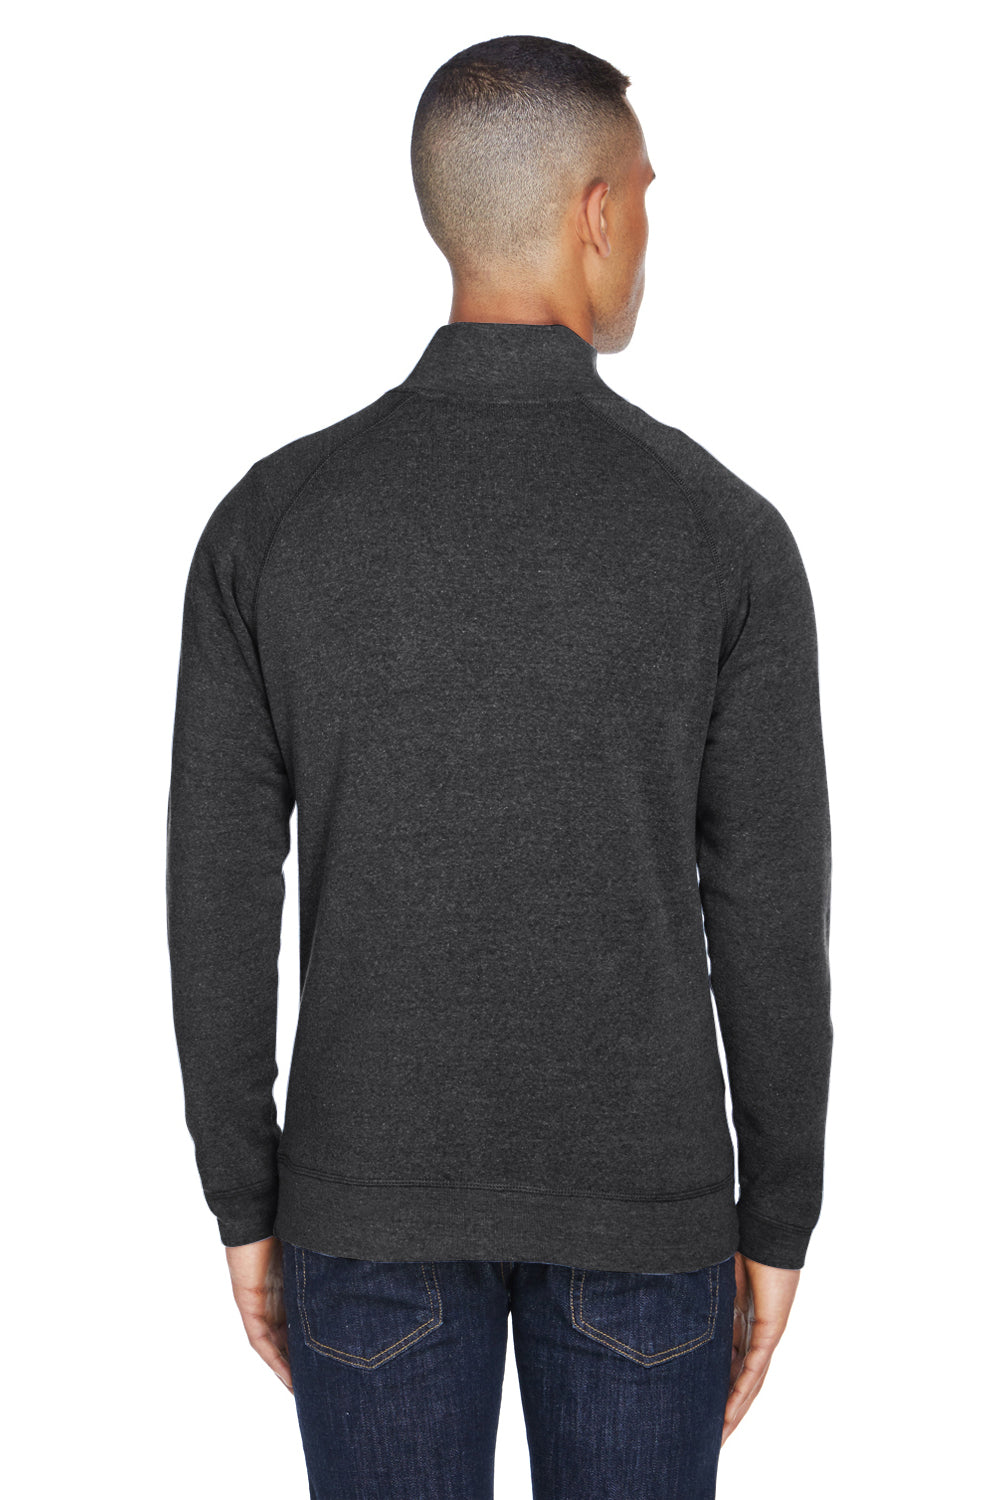 J America JA8869 Mens Fleece 1/4 Zip Sweatshirt Black Back